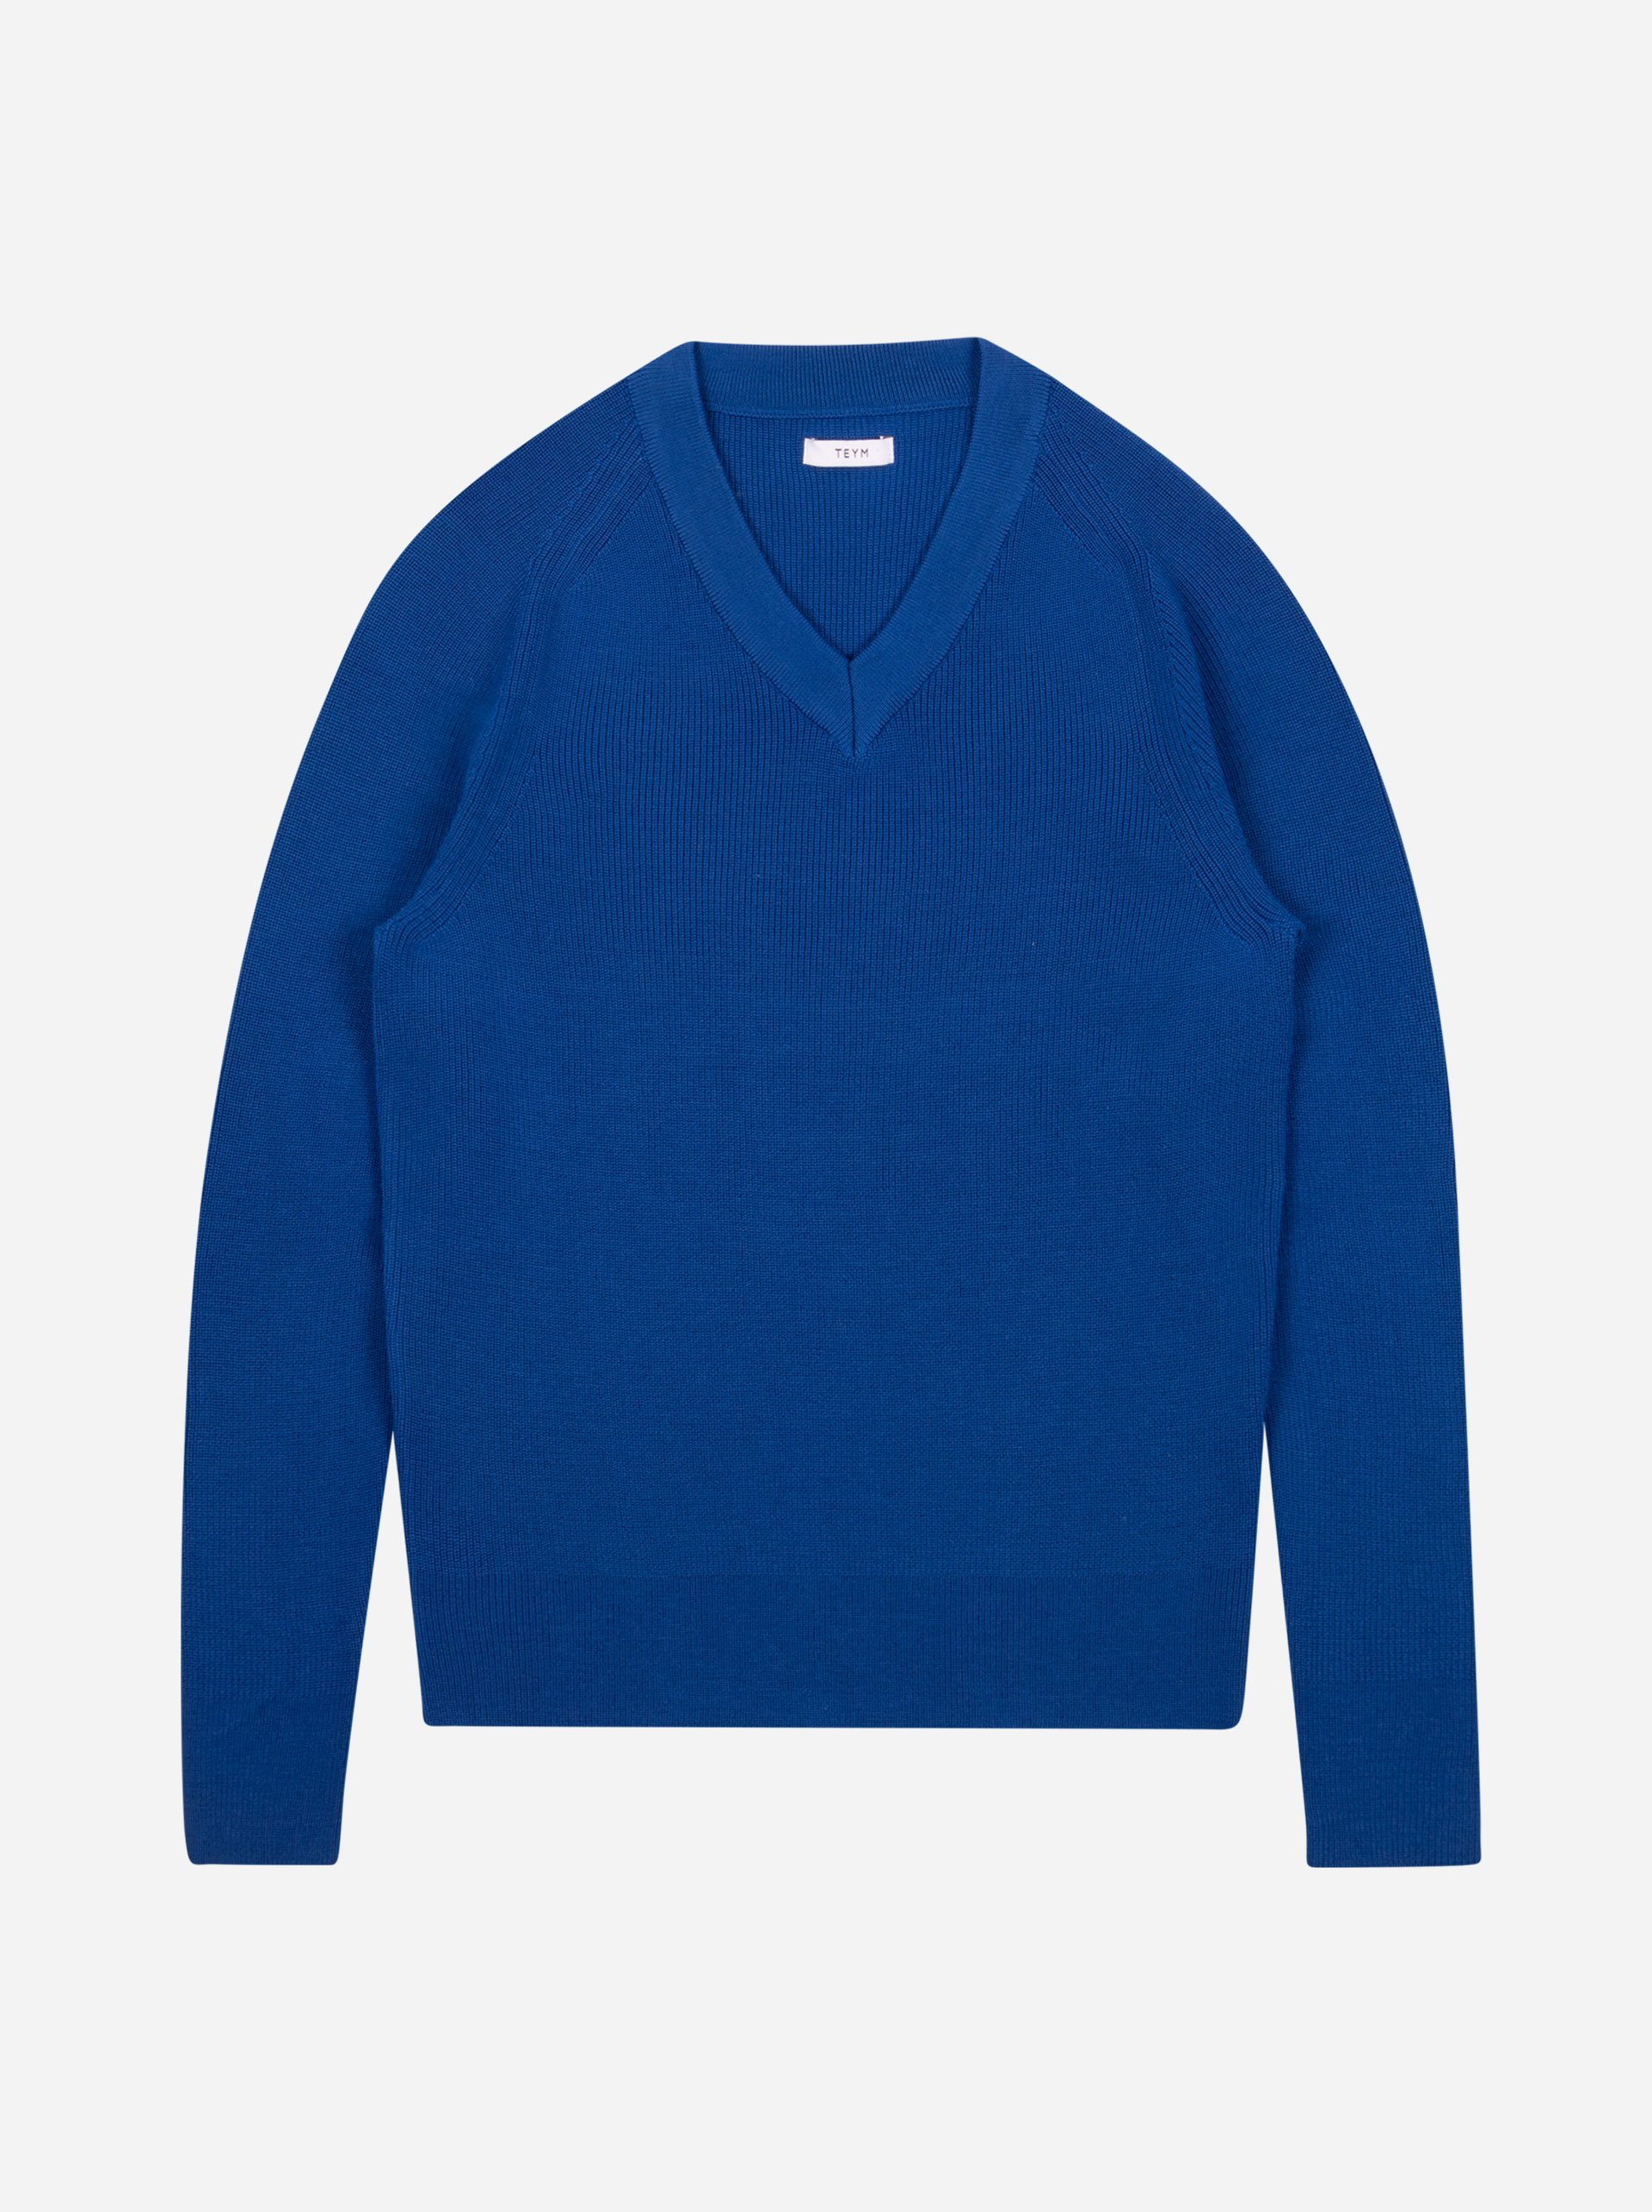 Teym - V-Neck - The Merino Sweater - Men - Cobalt blue - 4